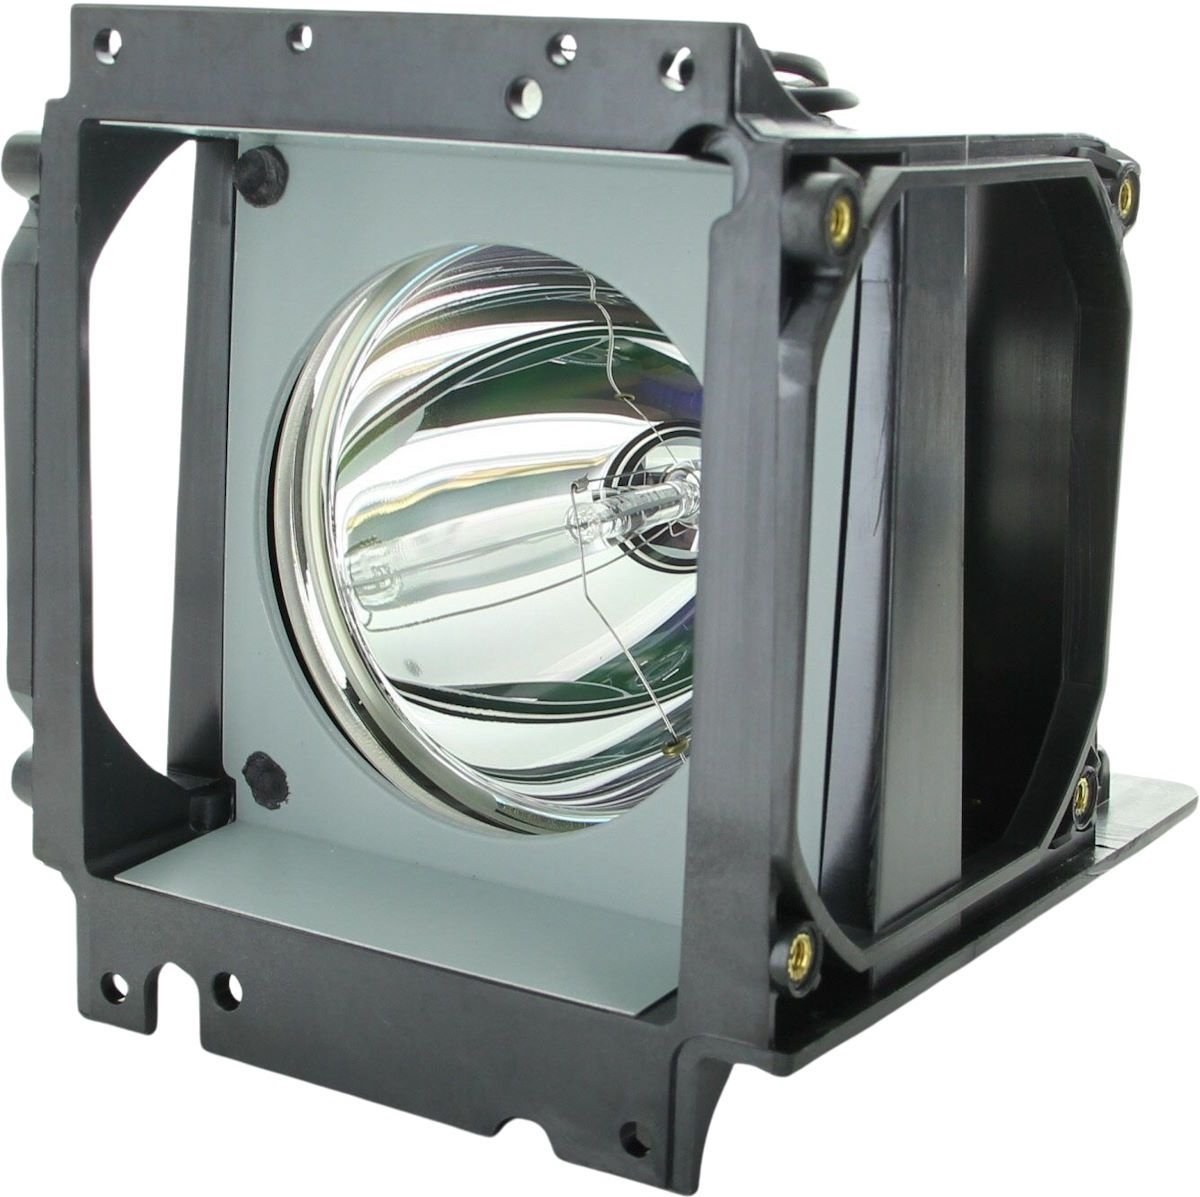 Beamerlamp geschikt voor de PLANAR Clarity c50SPi beamer, lamp code 150-0142 / 151-0005 / 151-1063. Bevat originele P-VIP lamp, prestaties gelijk aan origineel.